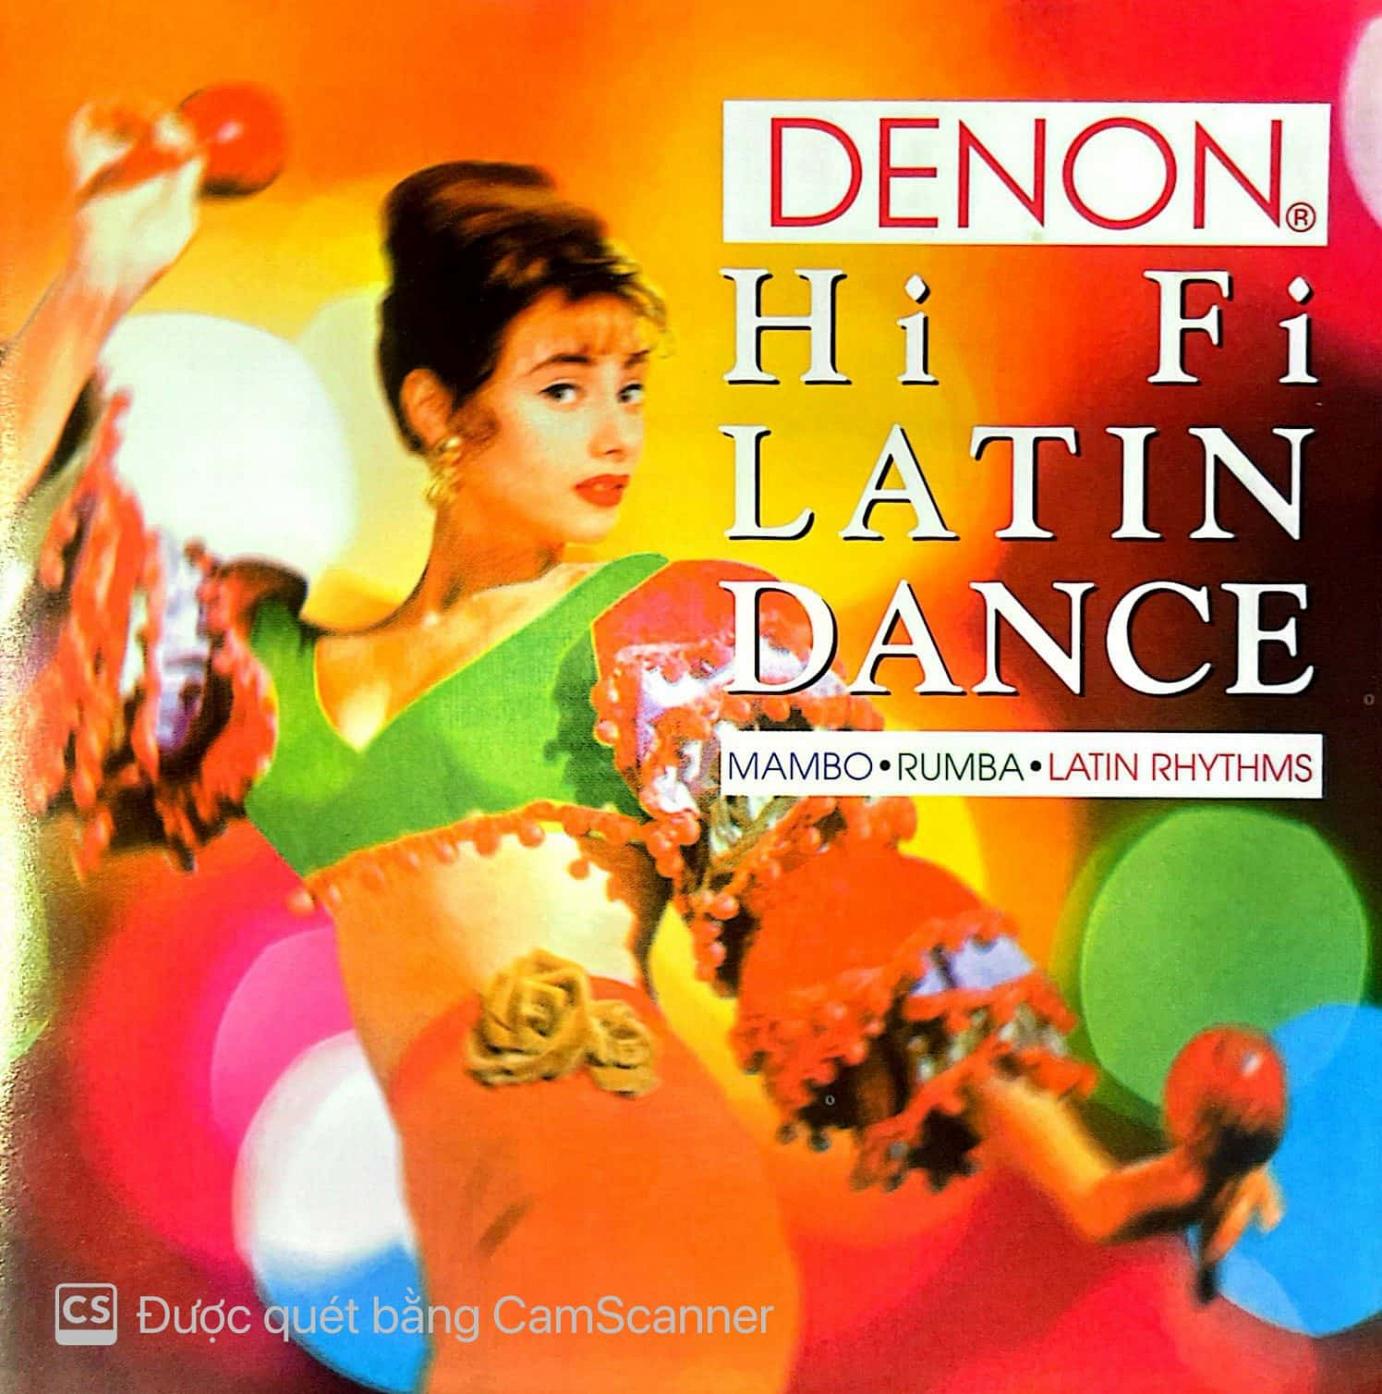 DENON - Hi Fi Latin Dance